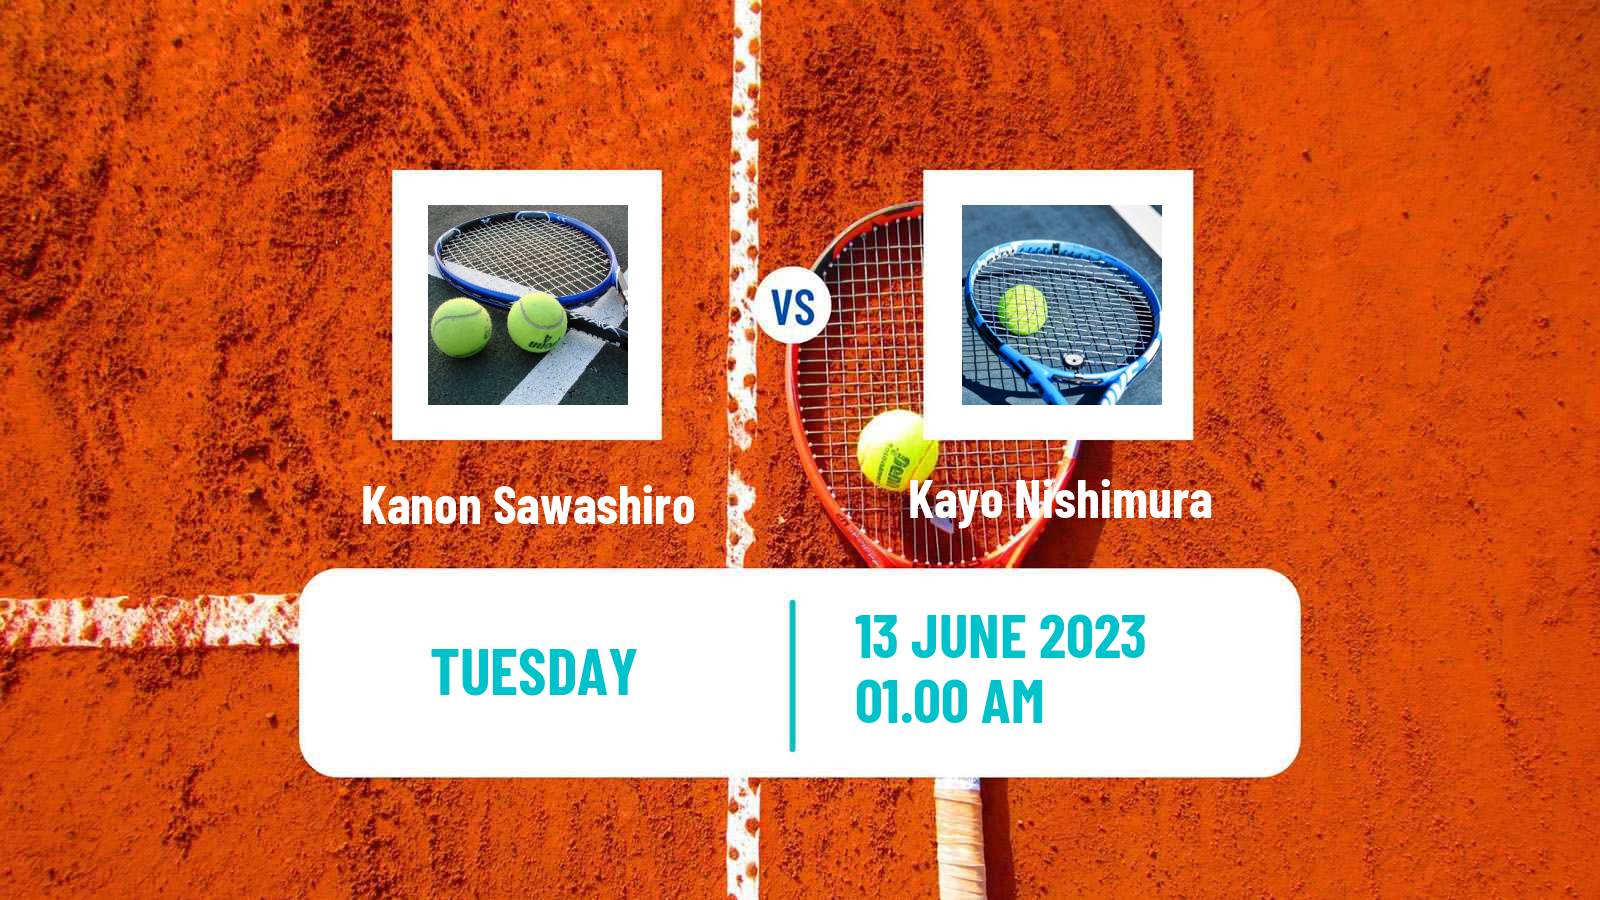 Tennis ITF W15 Kawaguchi Women Kanon Sawashiro - Kayo Nishimura